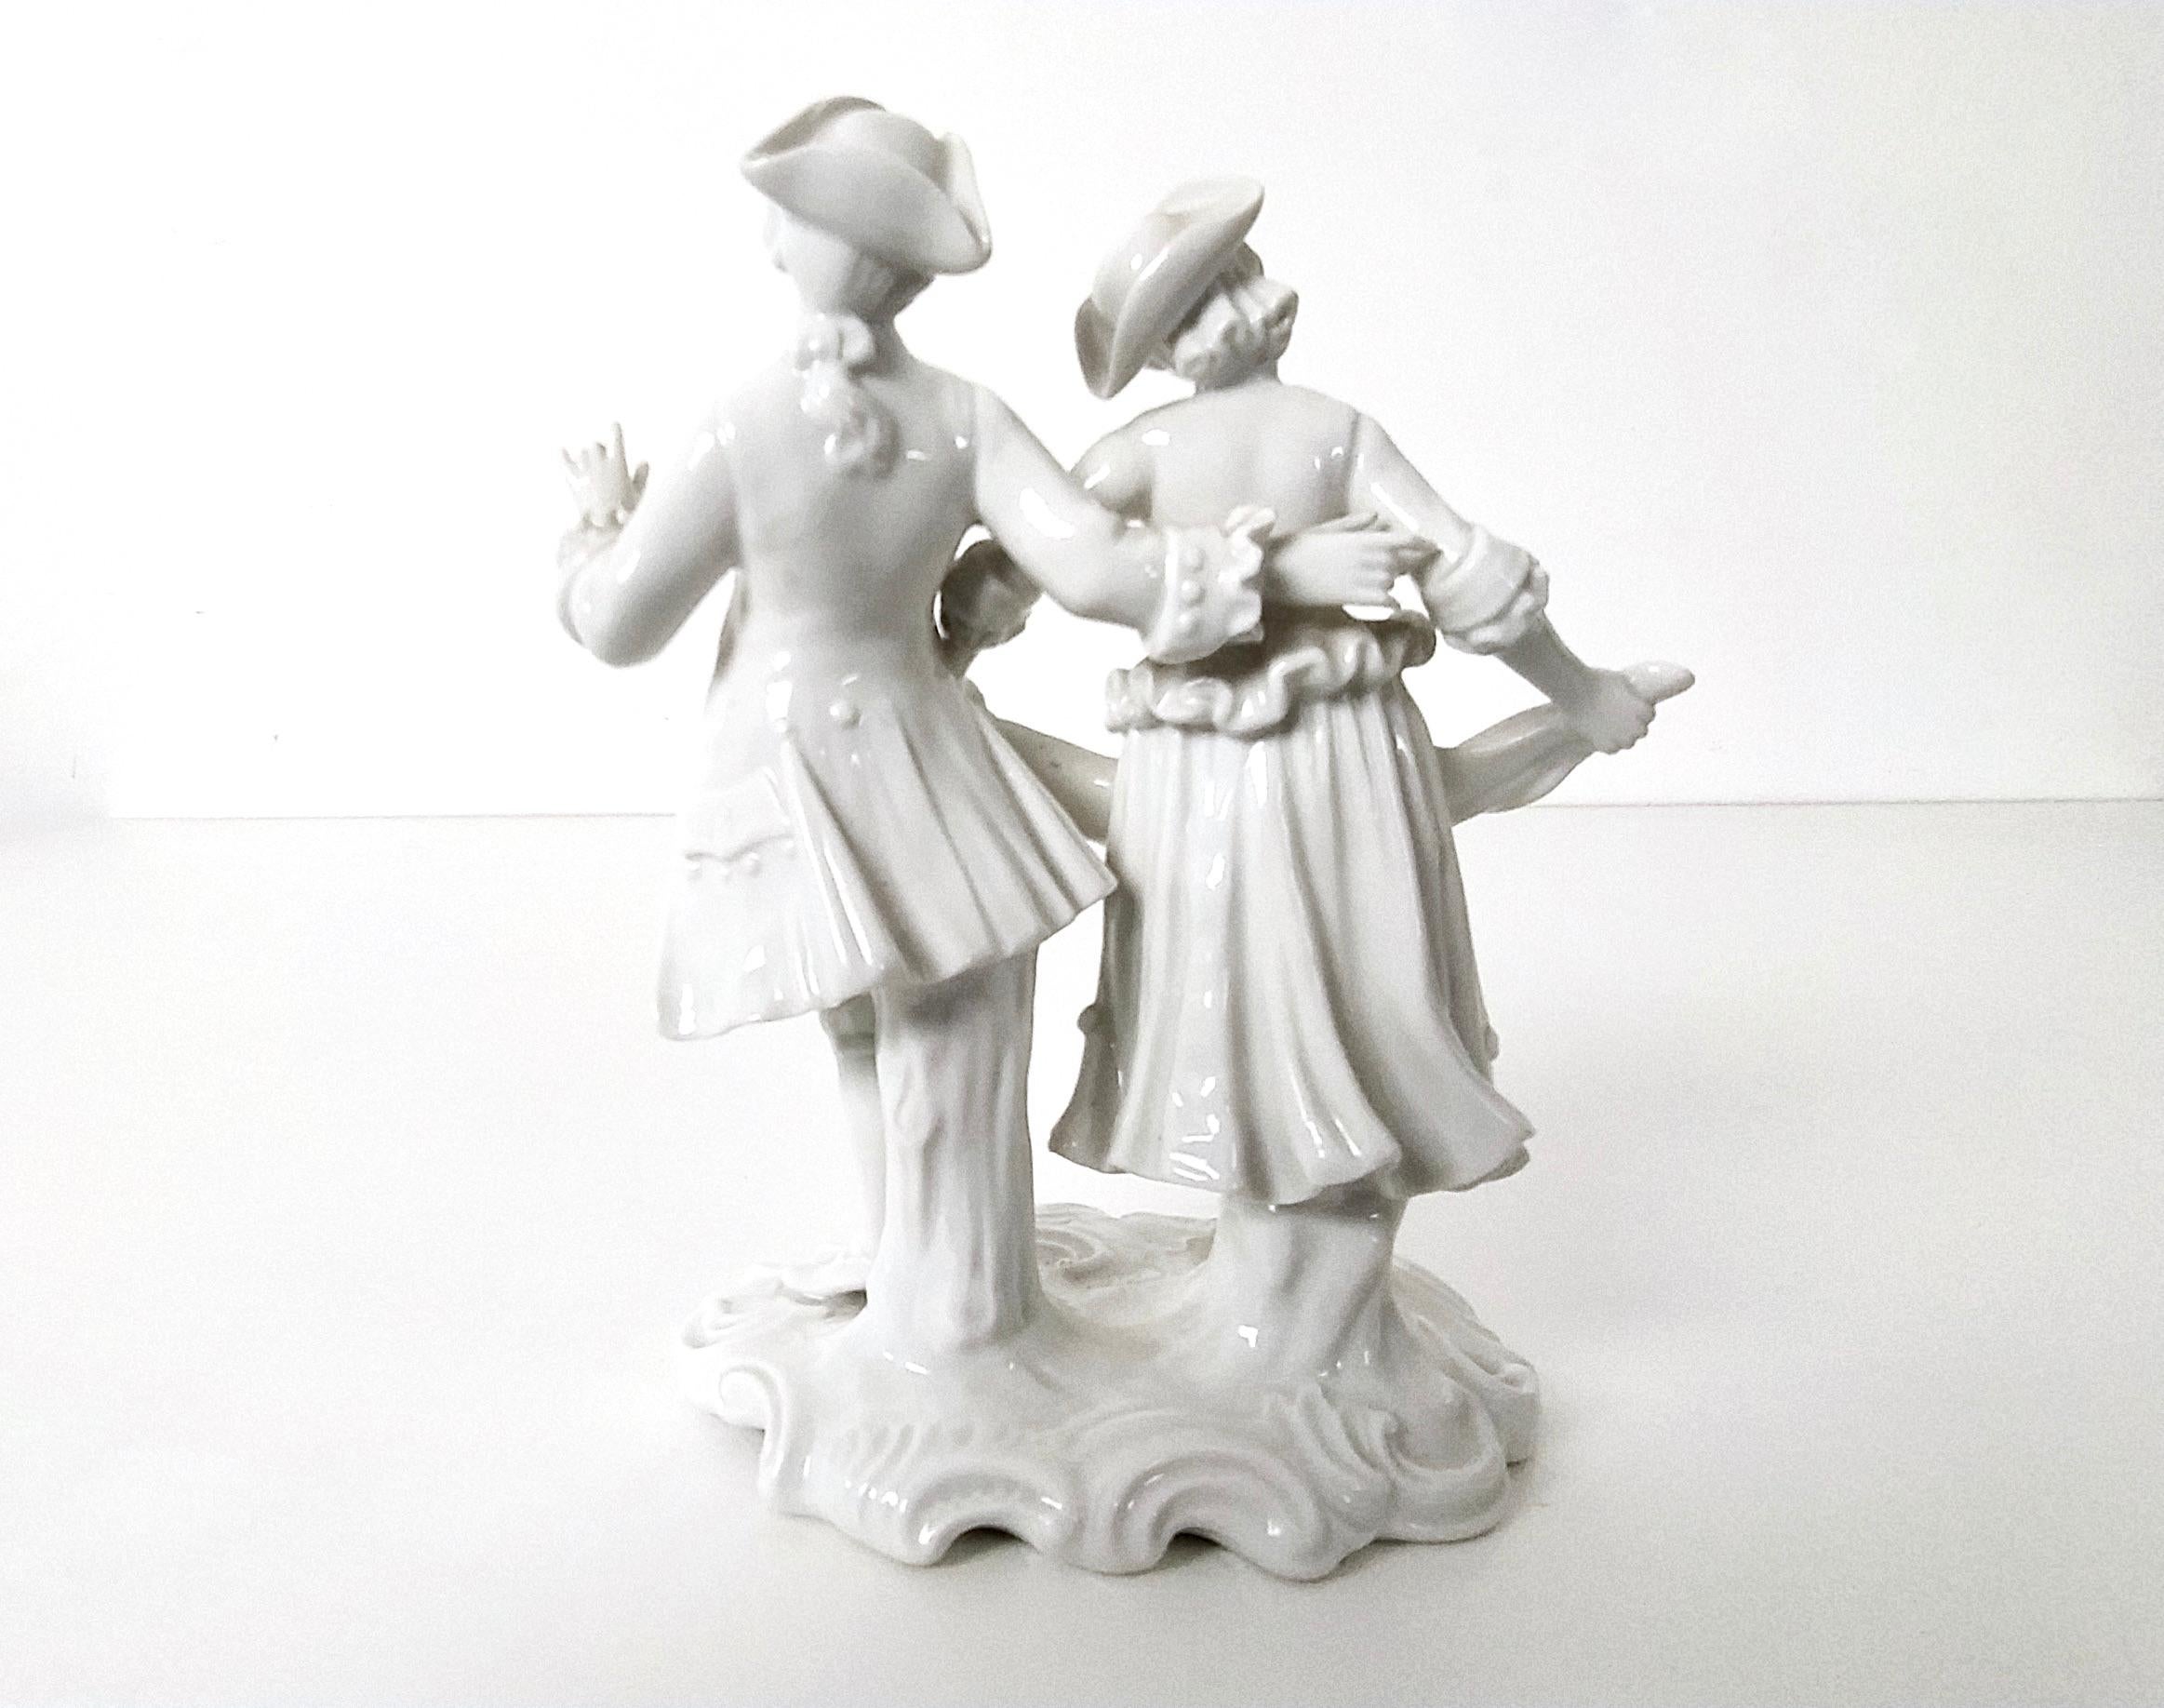 capodimonte style figurines